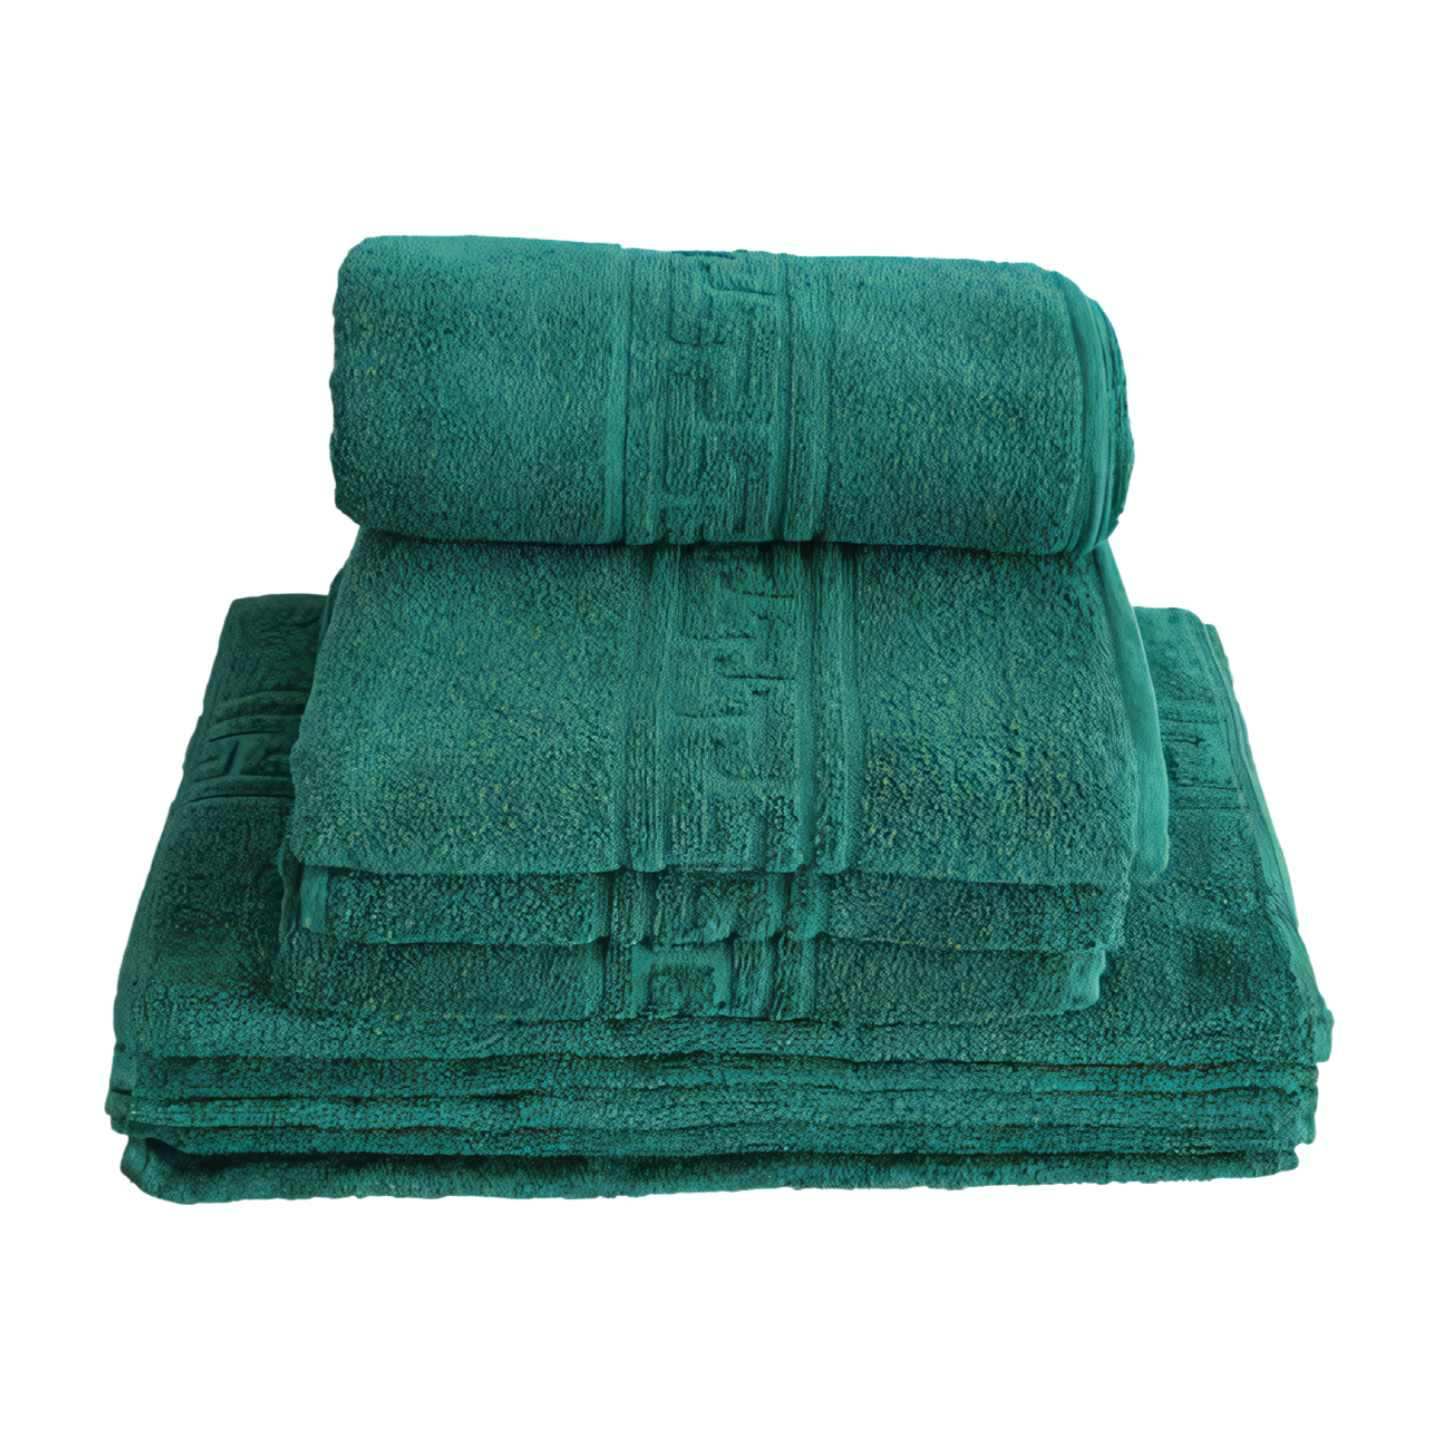 2 σετ πετσέτες Βαμβάκι 100%, Μοντέλο Greece GREEN 67 cm x 130 cm, 48 cm x 85 cm